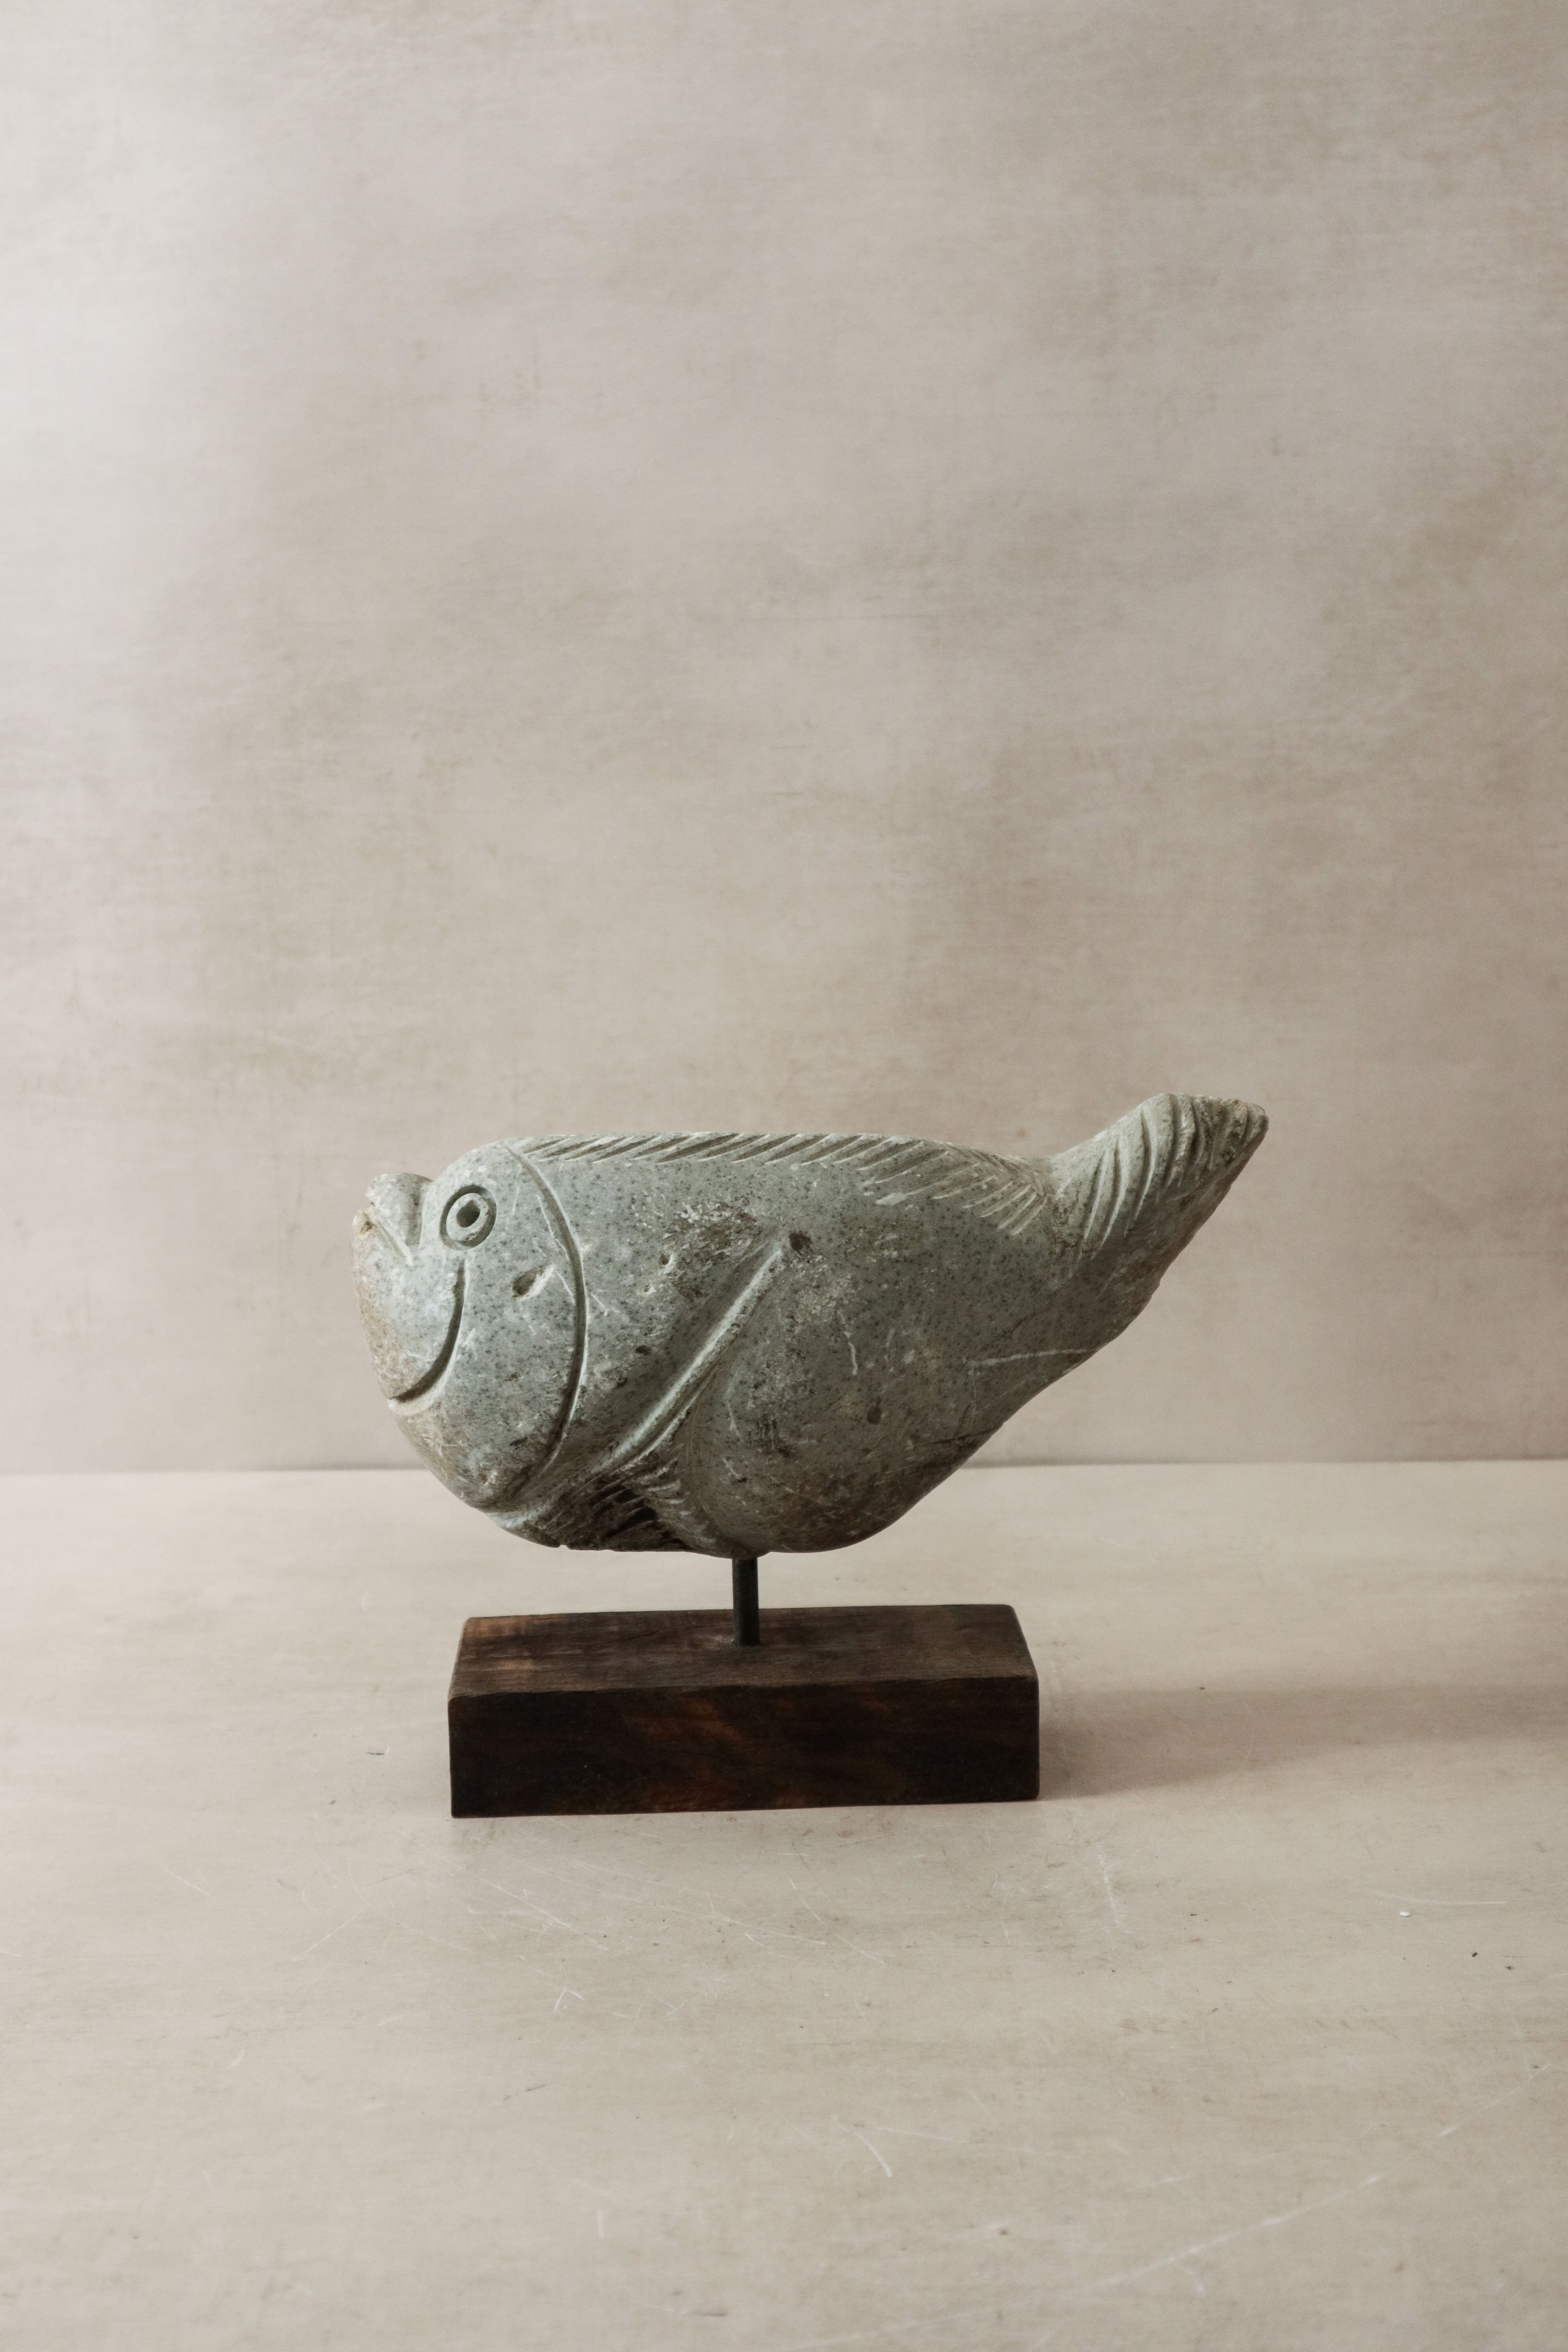 botanicalboysuk Stone Fish Sculpture - Zimbabwe - 31.2